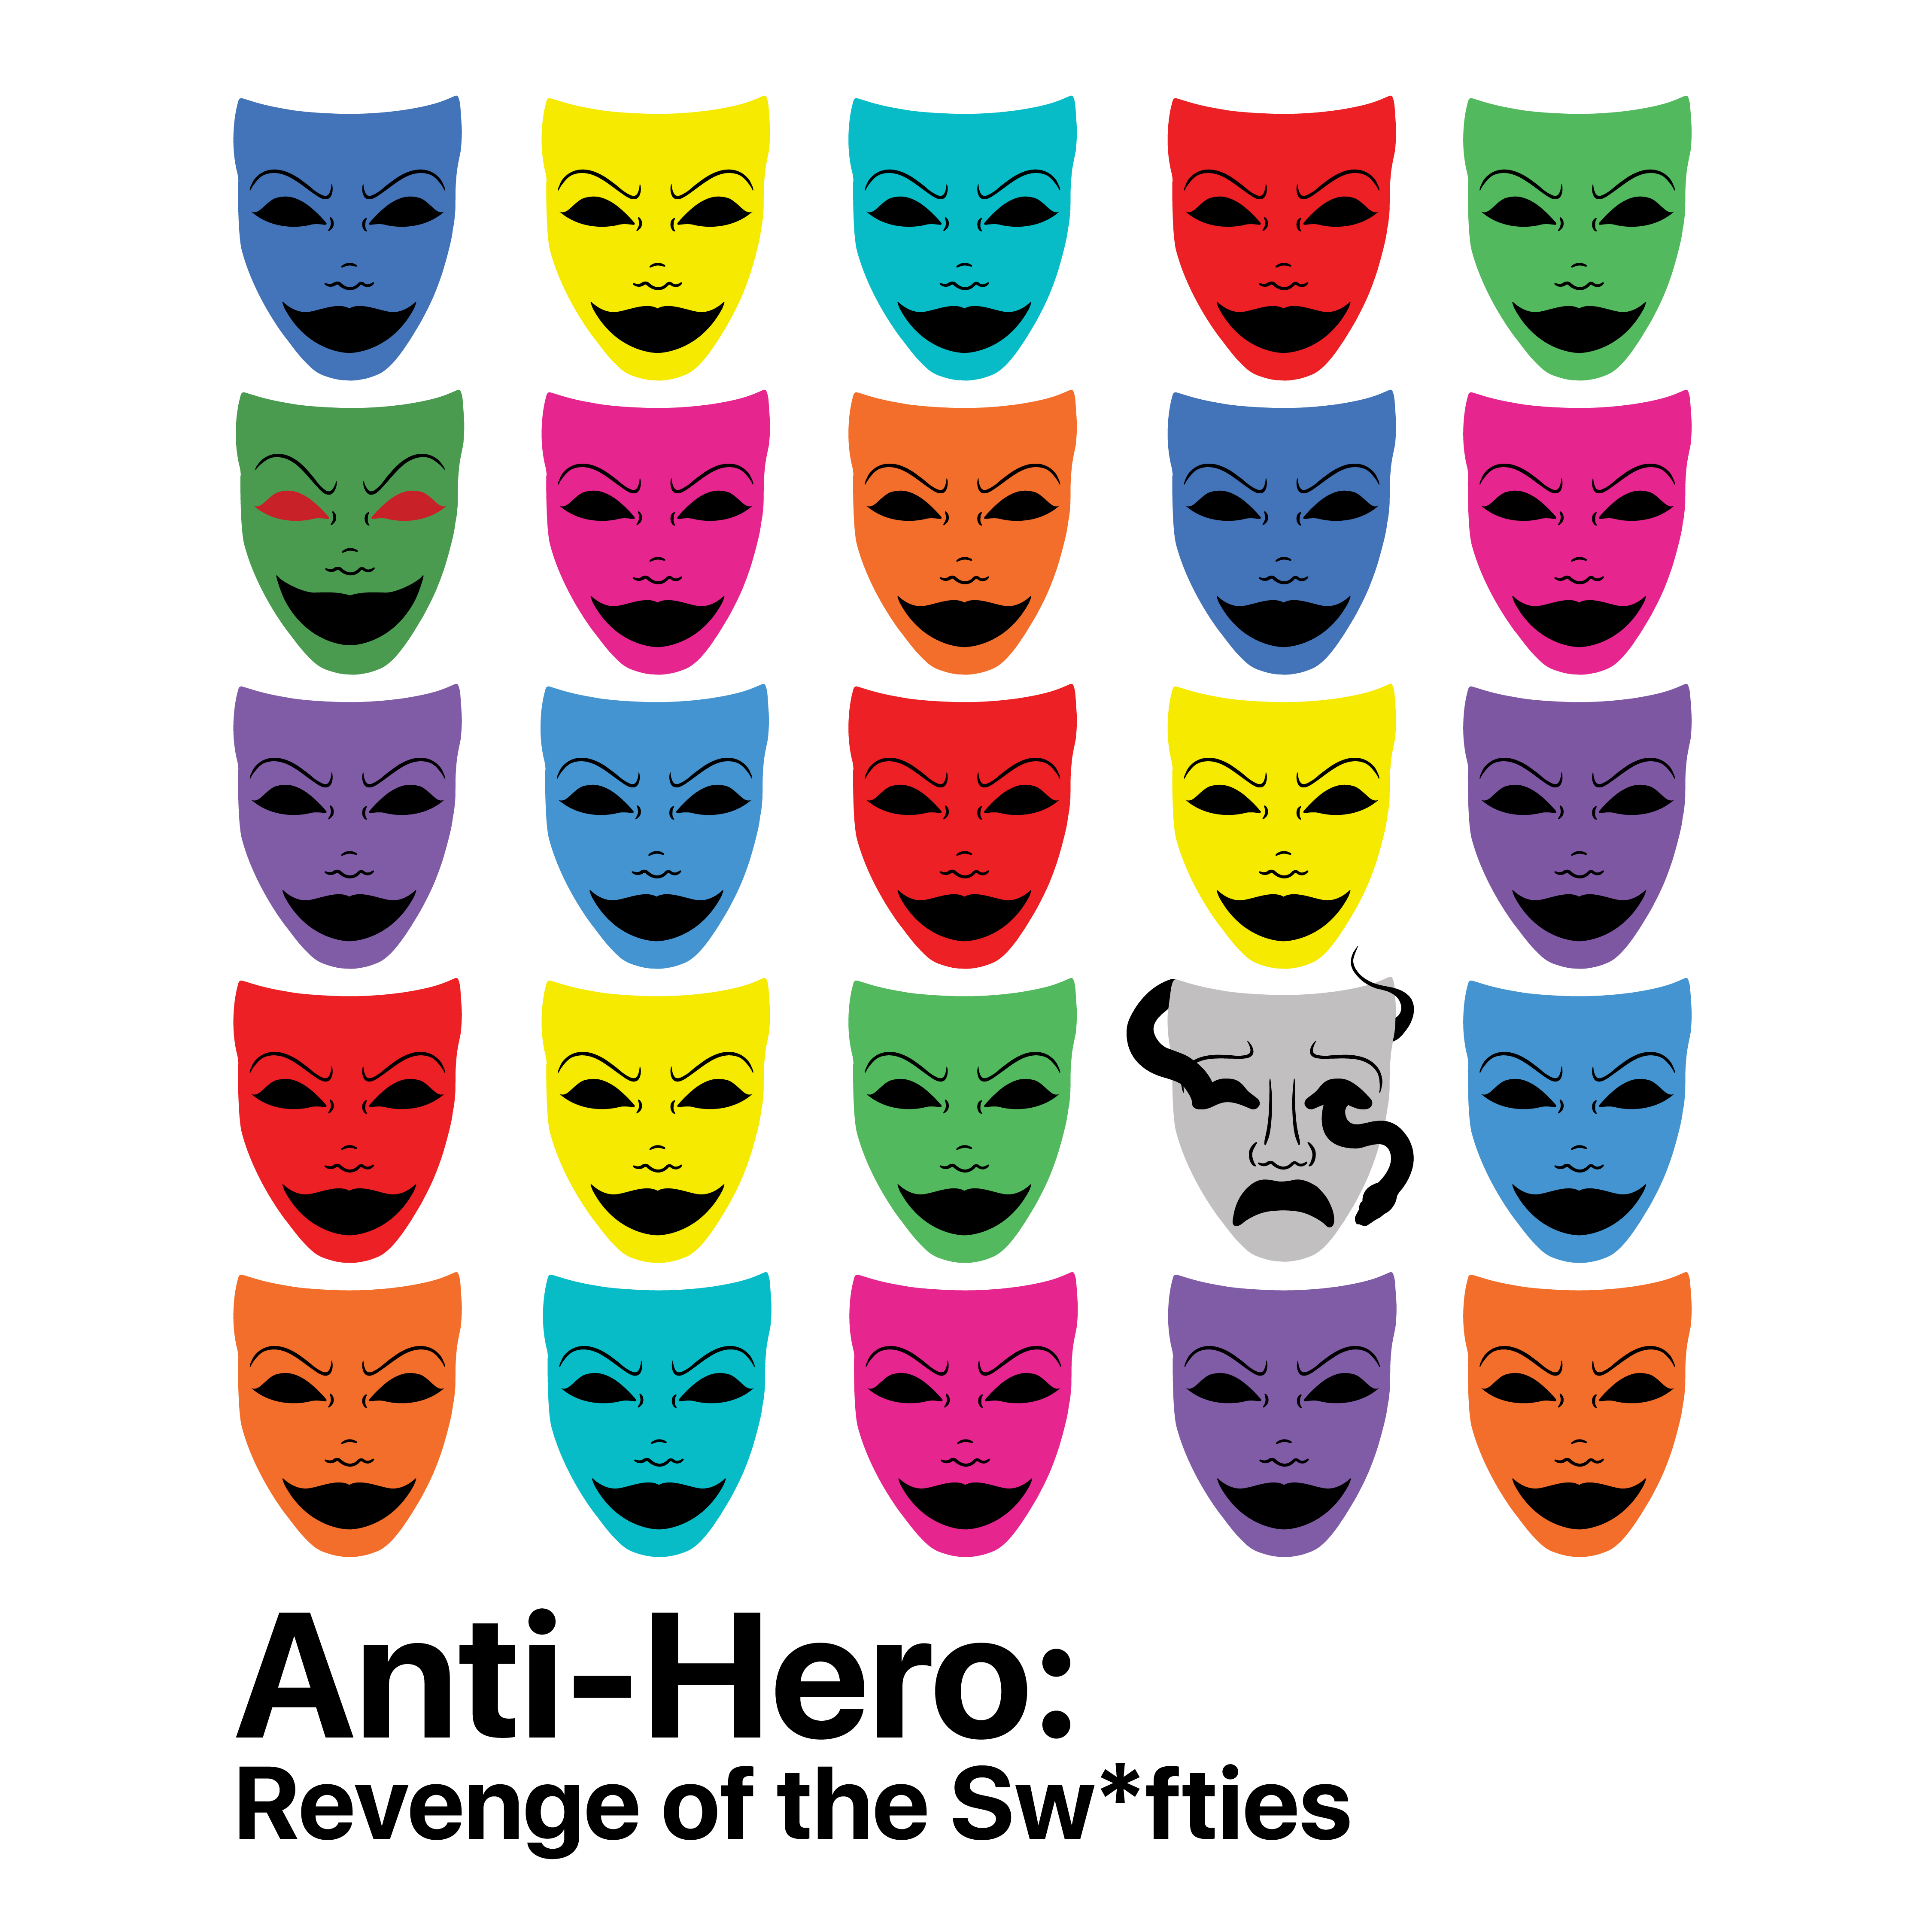 Anti-Hero: Revenge of the Swifties by Derick Edgren Otero